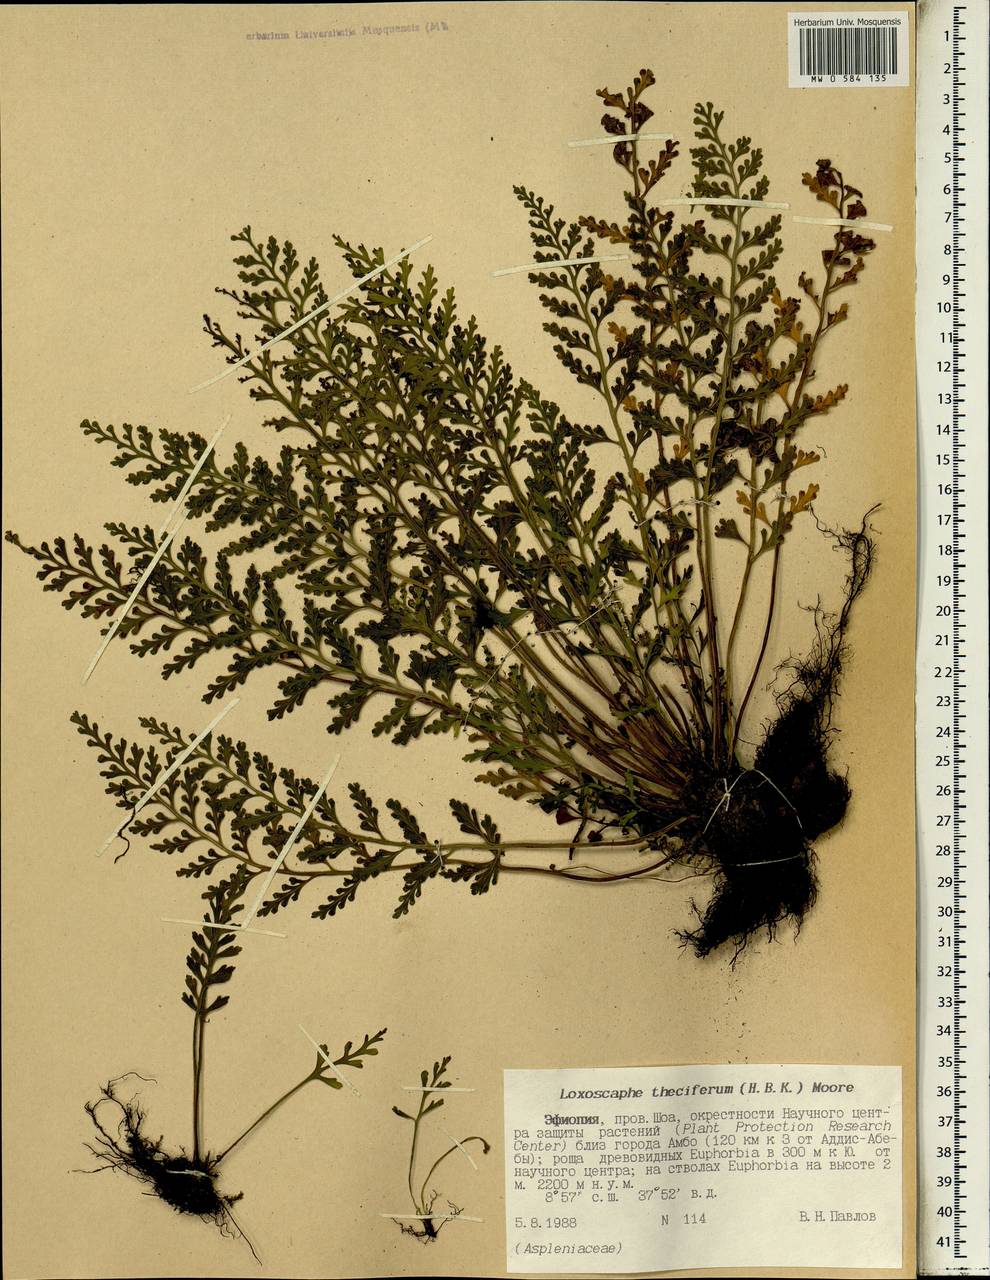 Asplenium theciferum (Kunth) Mett., Africa (AFR) (Ethiopia)